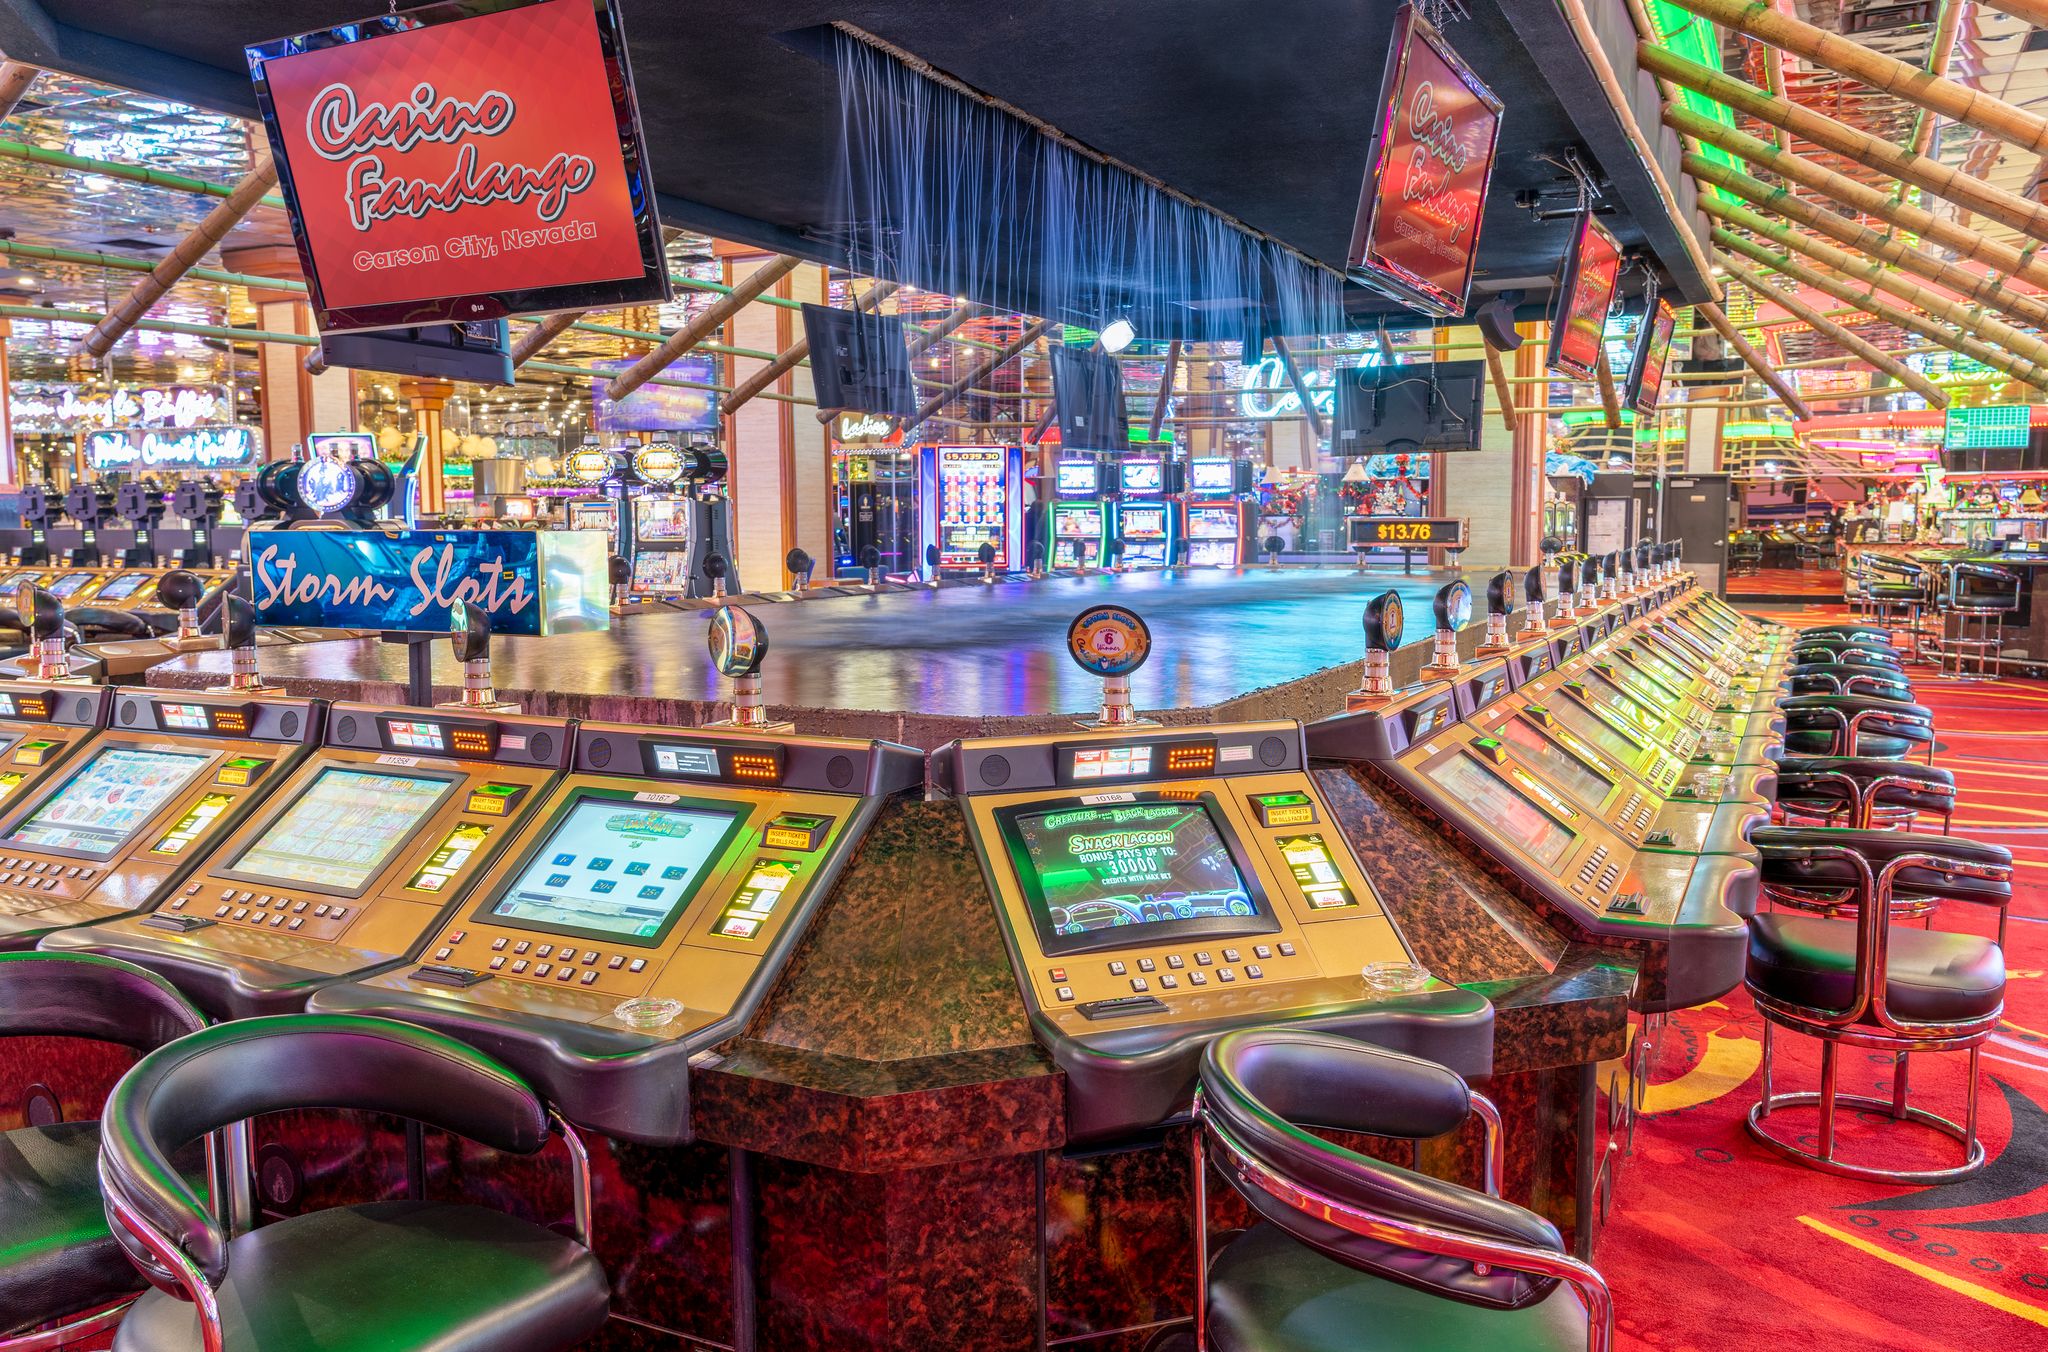 Casino Fandango - the Best Casino in Carson City, Nevada